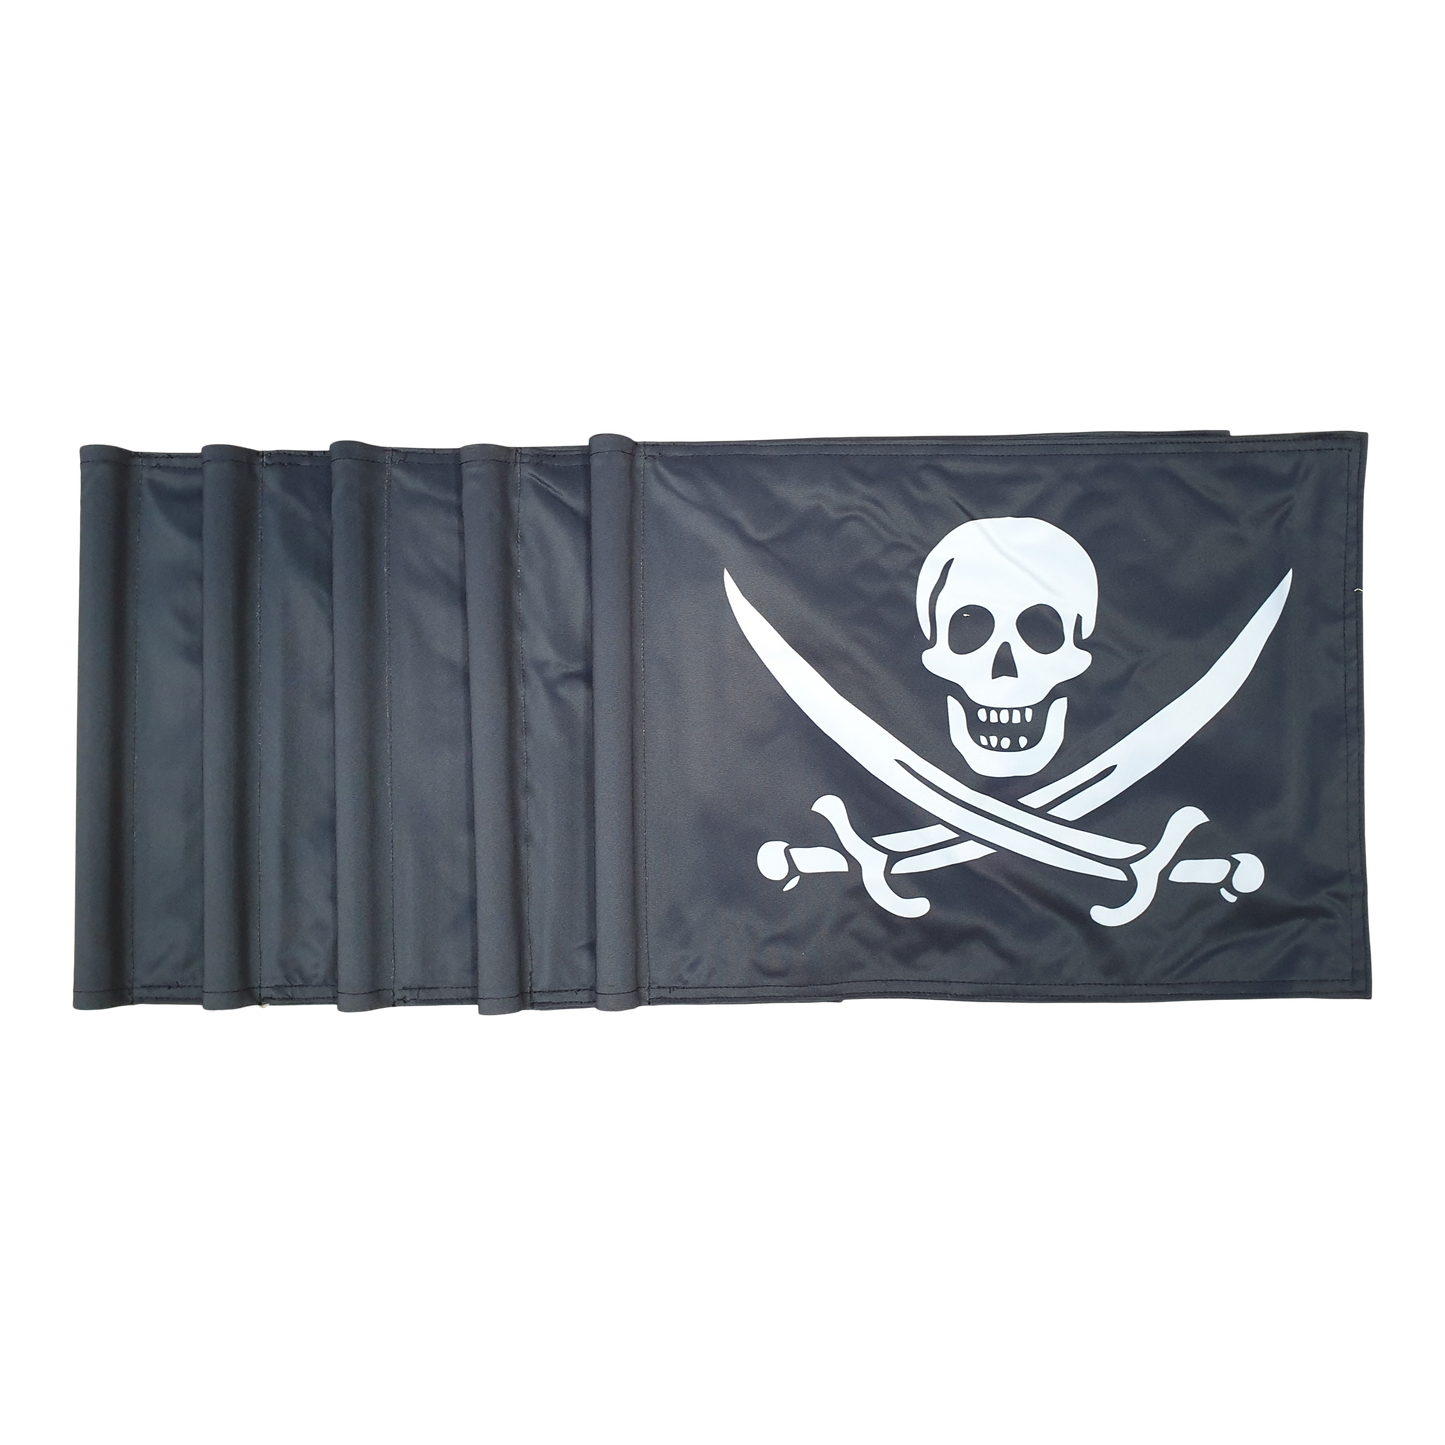 Golfflag, sort med hvidt piratlogo, 200 gram flagdug